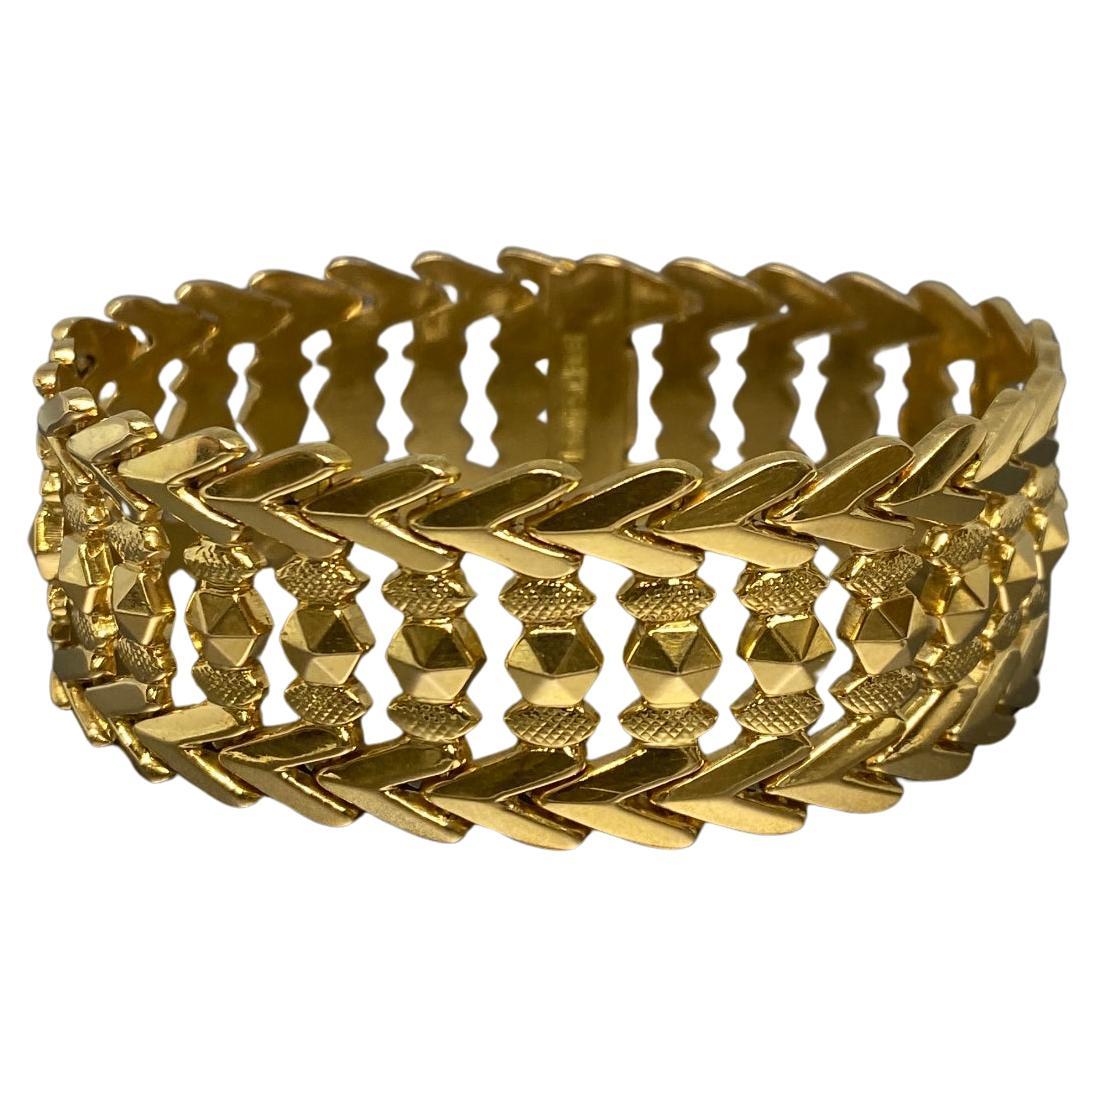 Up&Up vous propose ce fantastique bracelet à larges maillons réticulés en or rose 18kt, fabriqué en Italie vers les années 1960.

Ce grand, audacieux et magnifique bijou de poignet, d'une largeur de 7/8